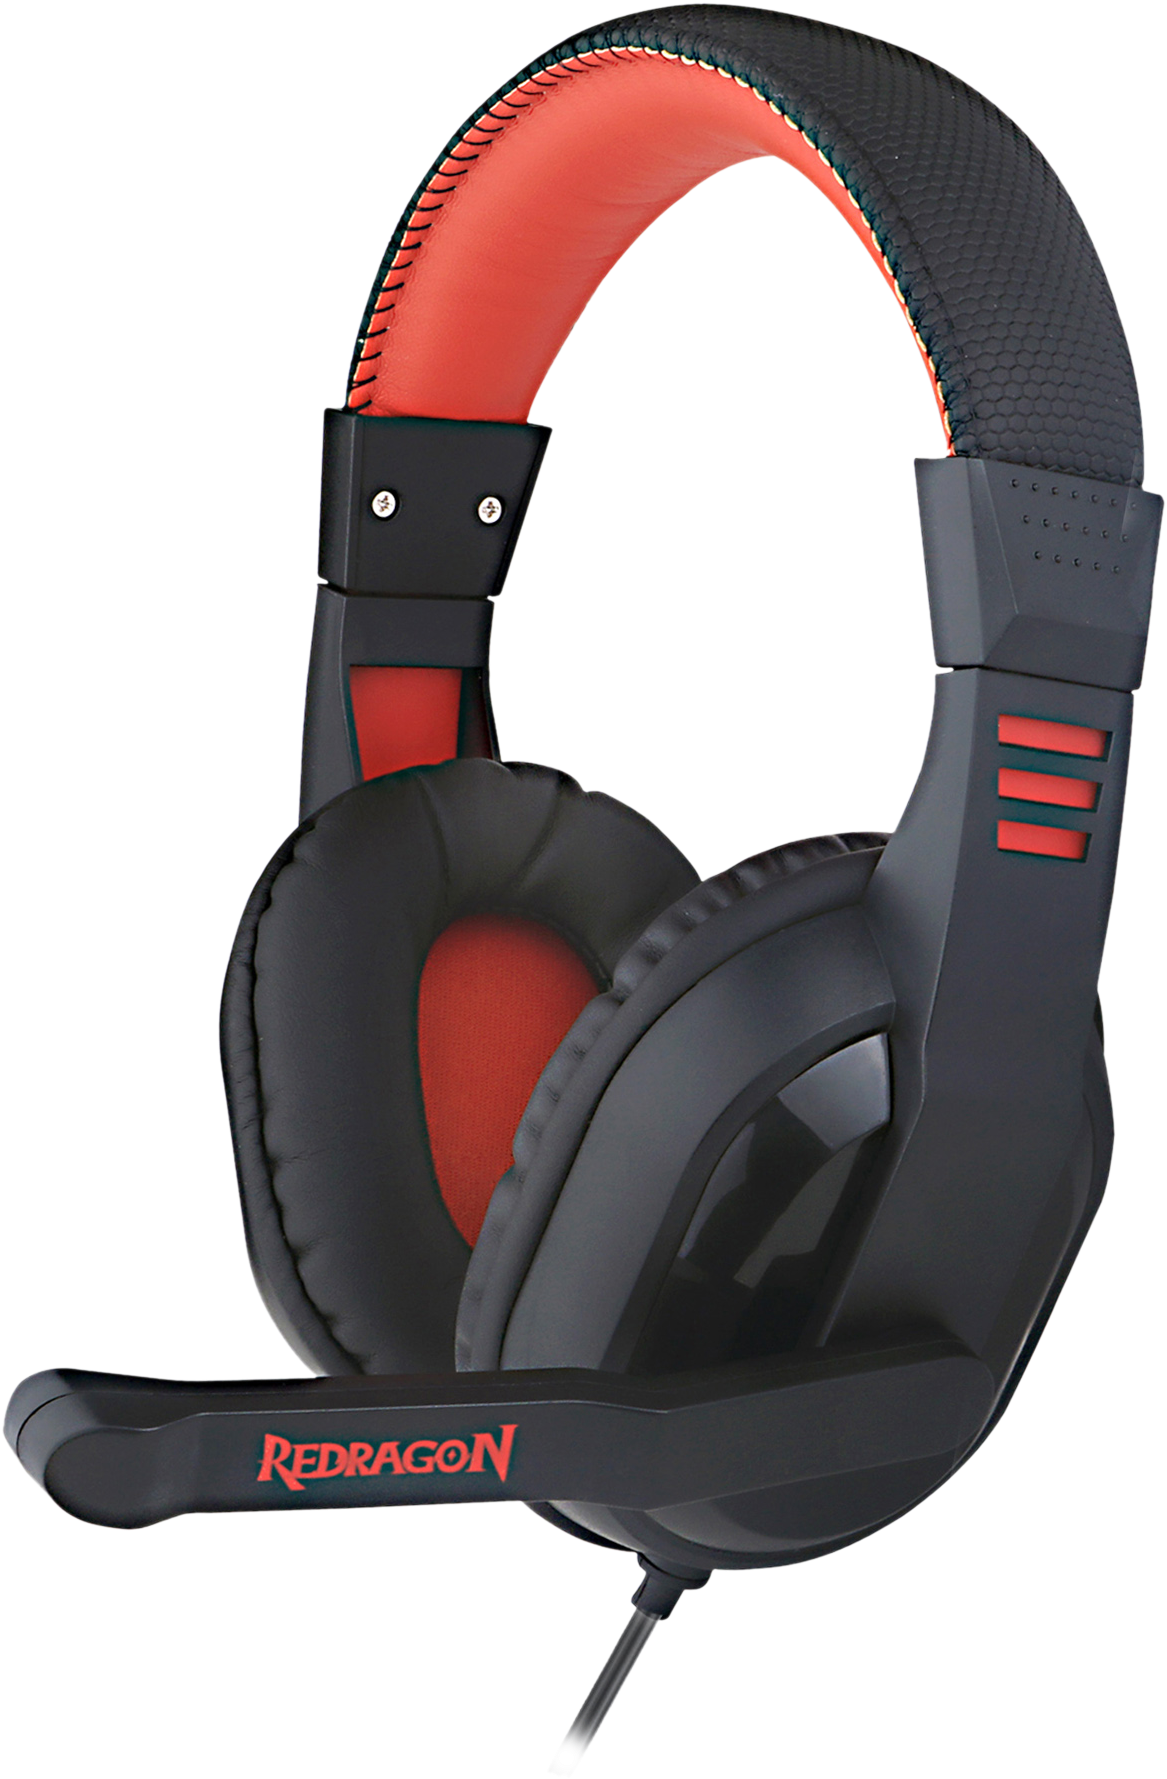 Redragon Black Red Gaming Headset PNG image